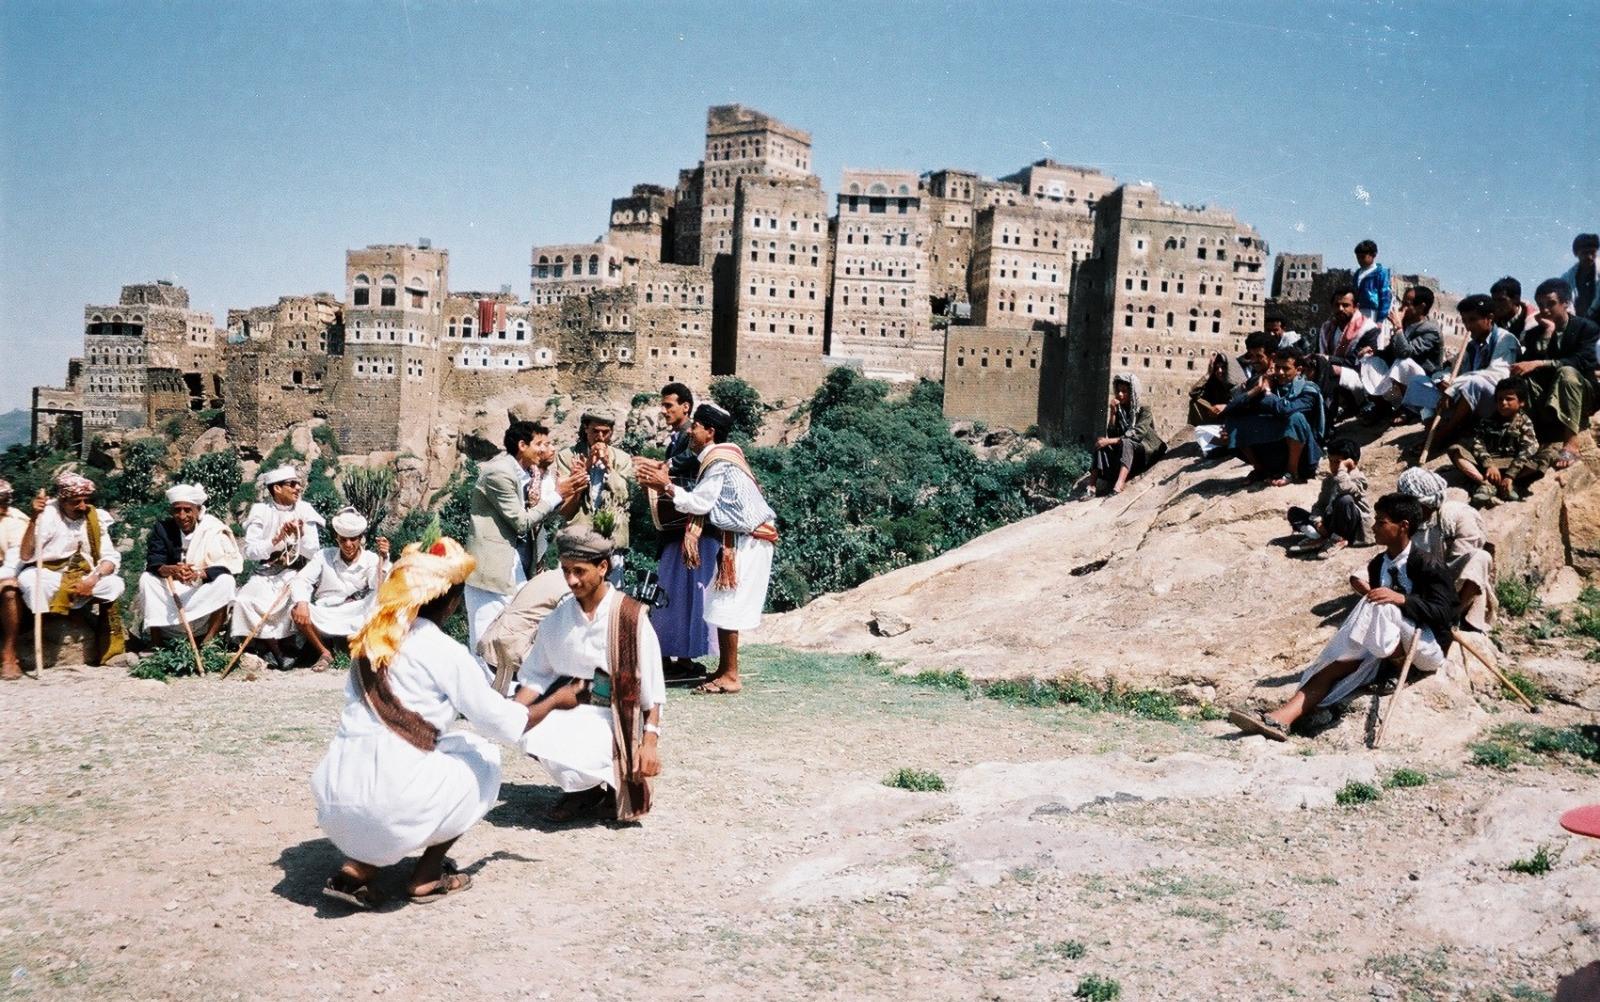 الدولة - المدينة تعرفان بـ"ملاطف": الانتفاخ الهوياتي مهلكة اليمنيين